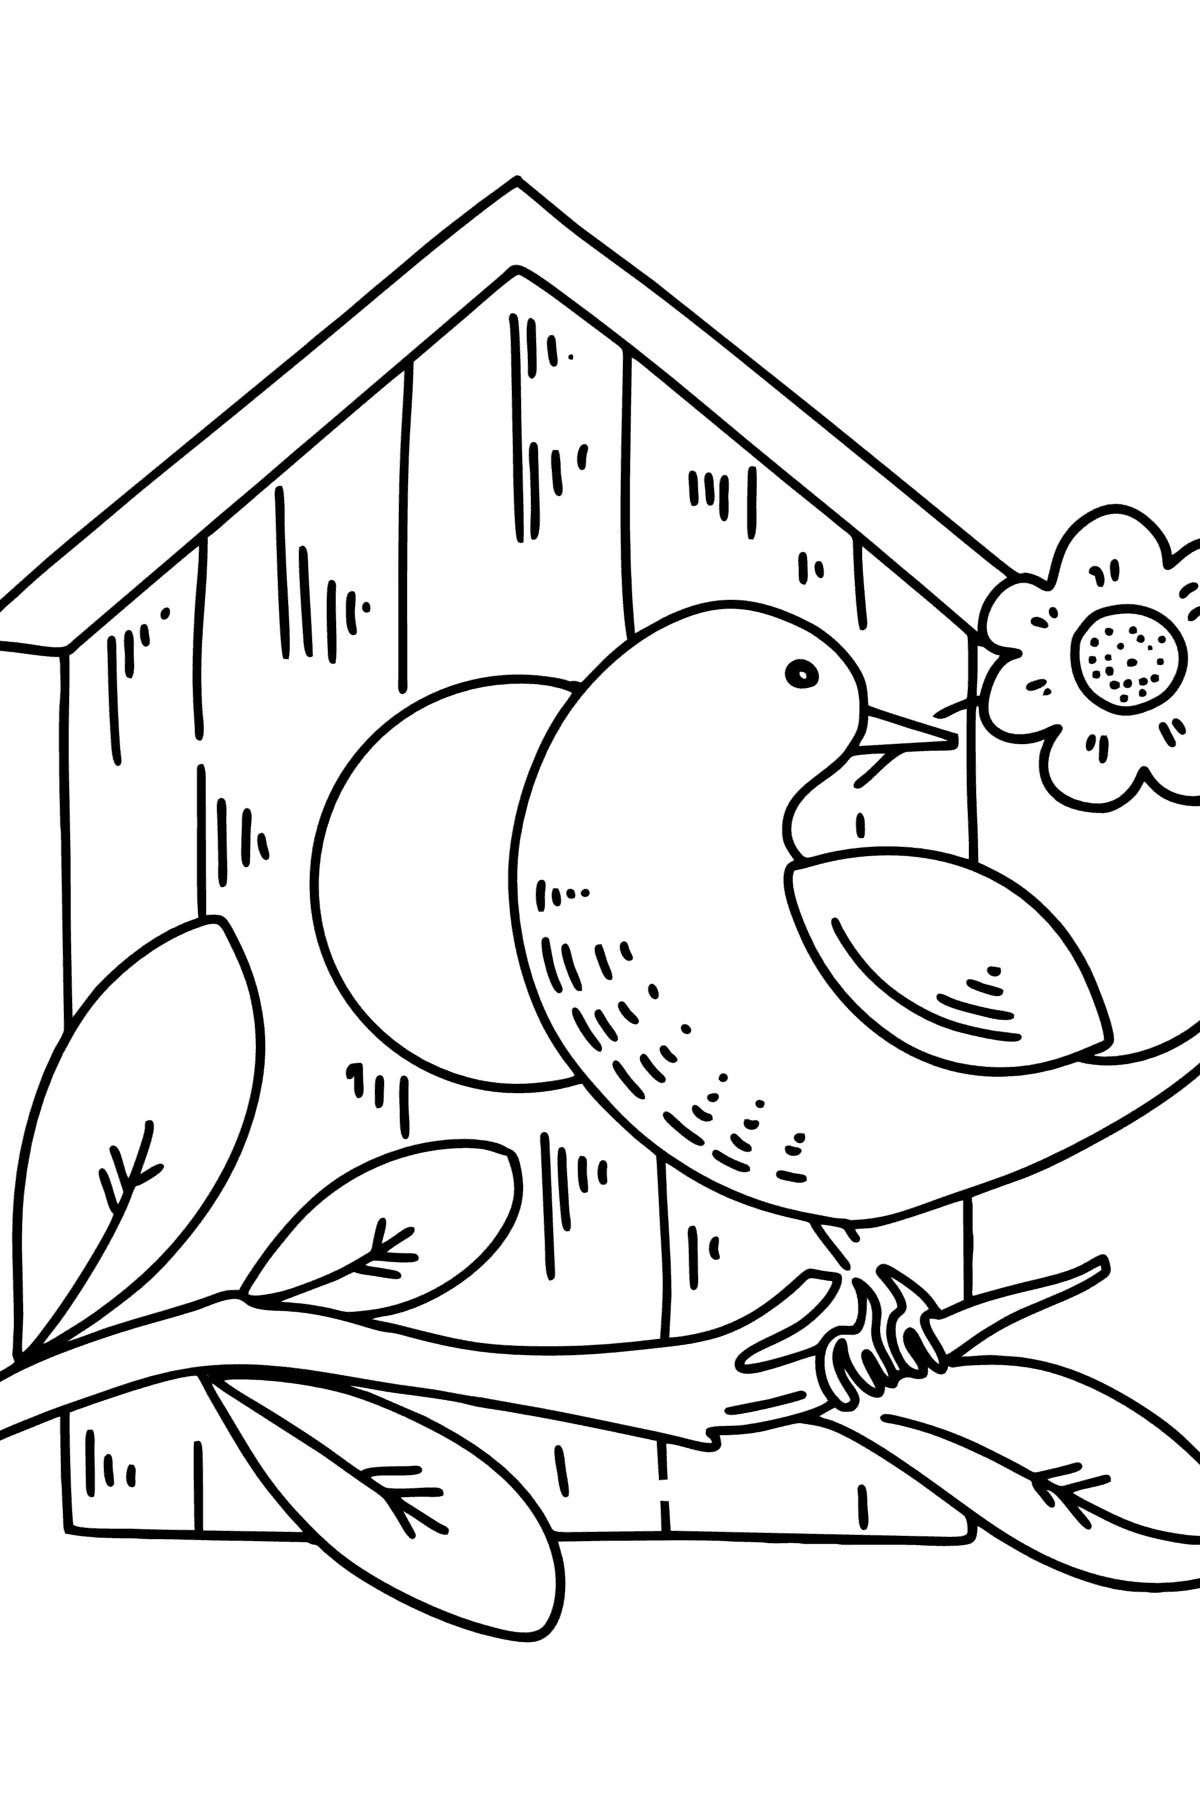 Desenho para colorir de Starling at the Birdhouse - Imagens para Colorir para Crianças